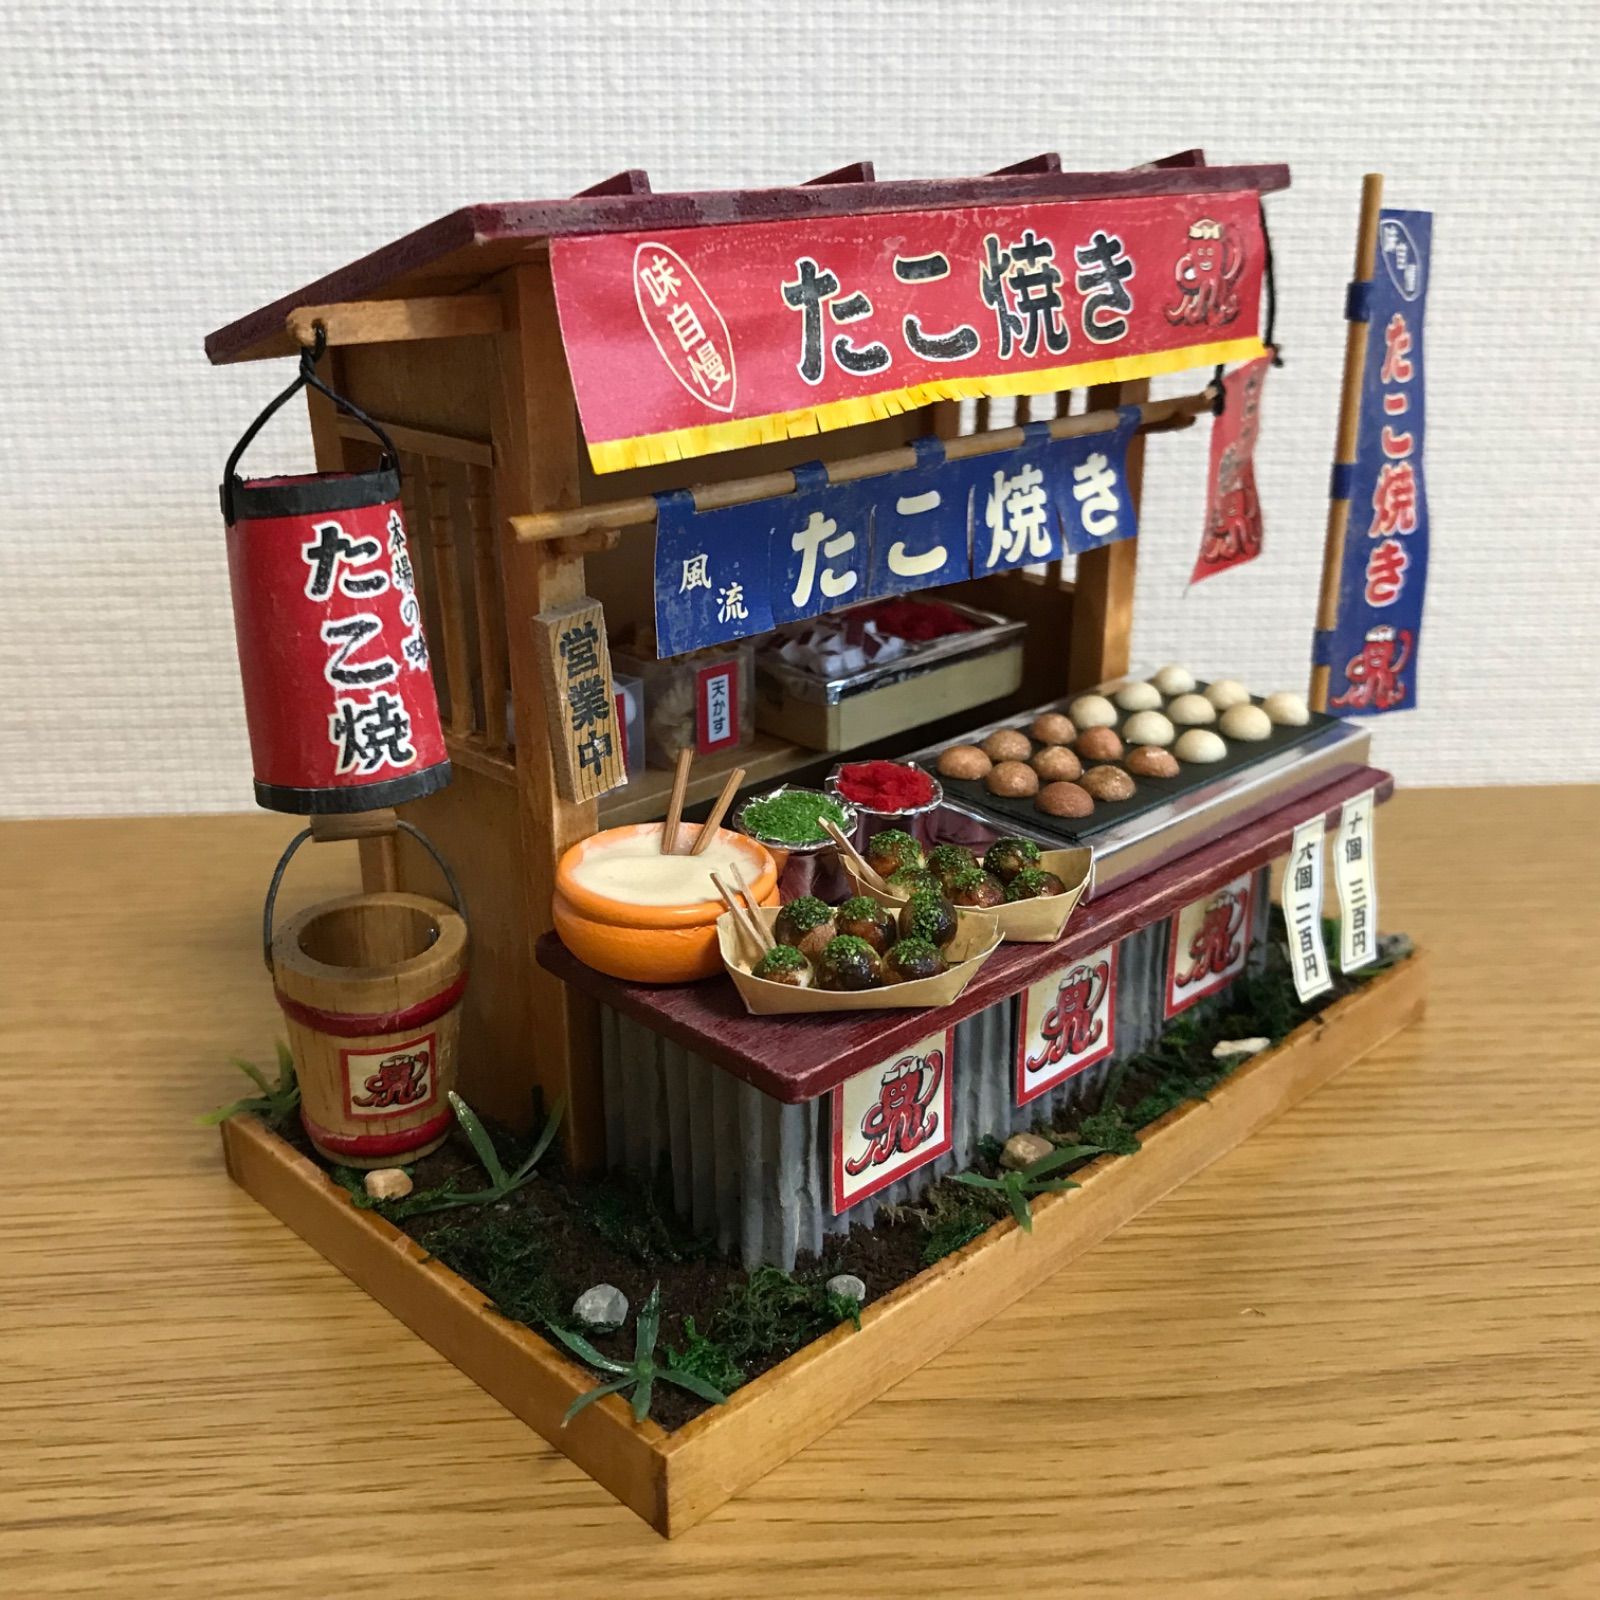 昭和の屋台、たこ焼き屋さん - メルカリ